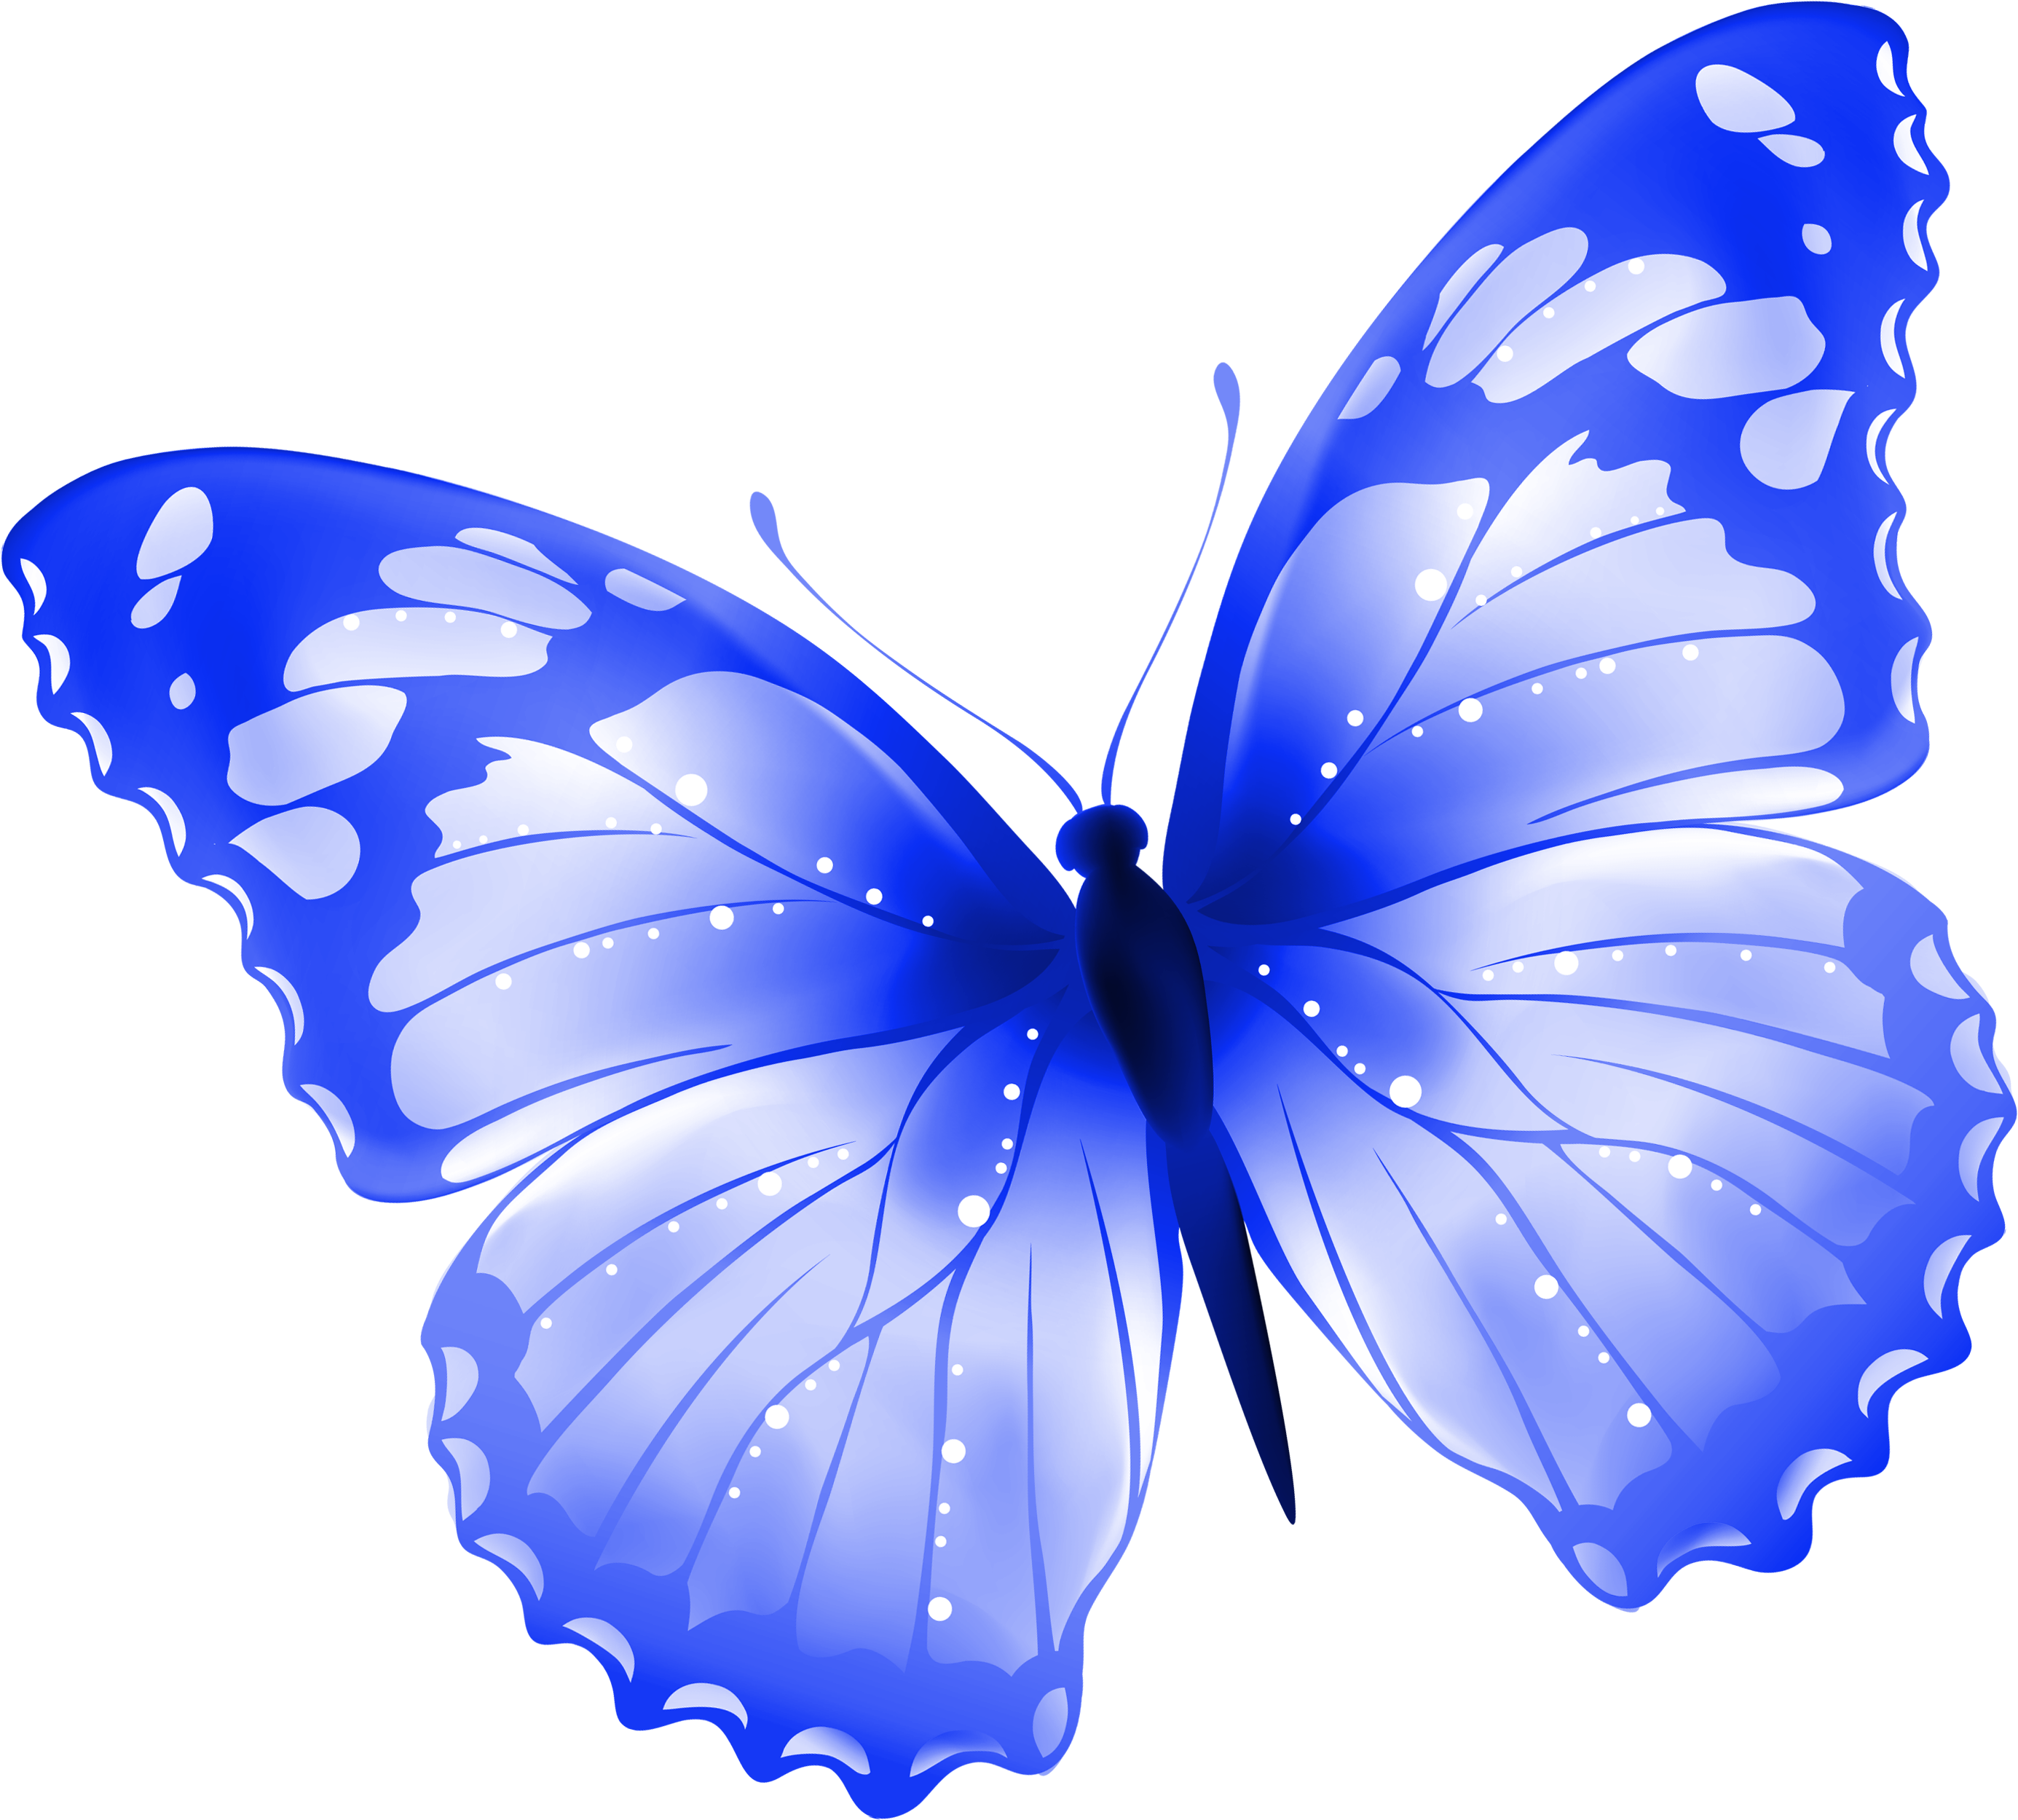 Картинки на прозрачном фоне синие. Бабочки на белом фоне. Картинка бабочка на прозрачном фоне. Бабочки на просроченном фоне. Синие бабочки на прозрачном фоне.